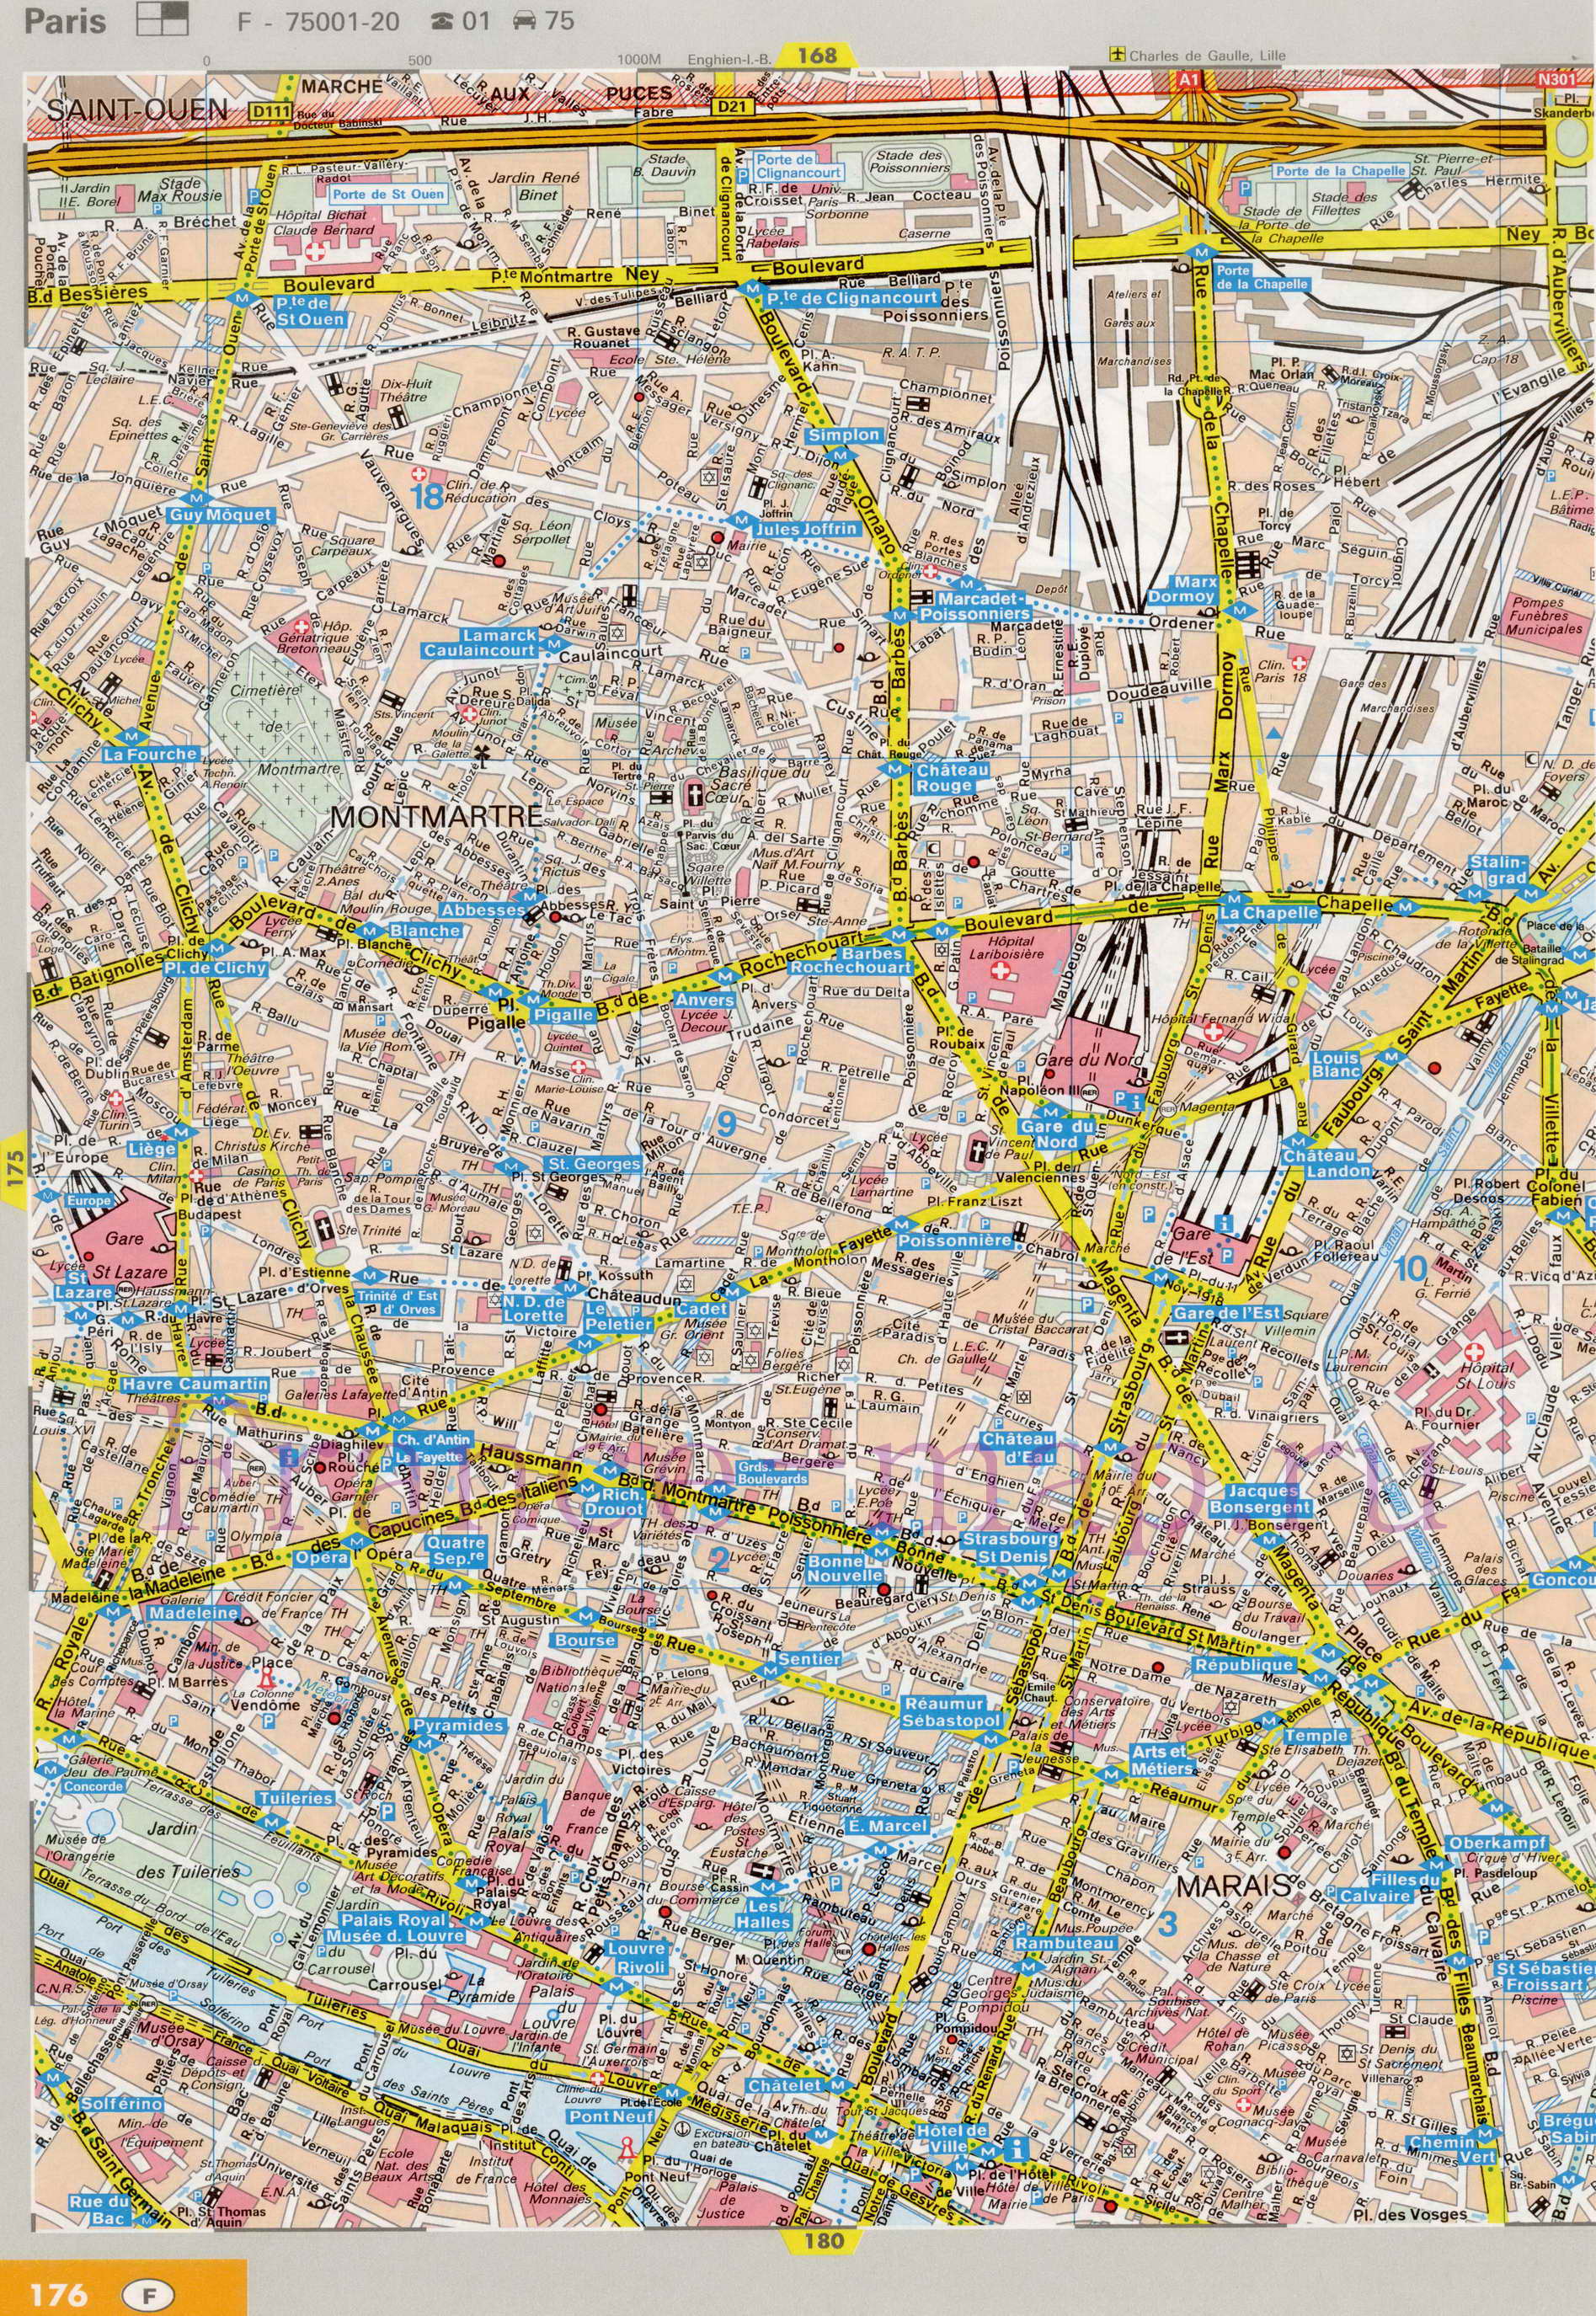 Карта улиц Парижа. Подробная карта Парижа с названиями улиц. Карта Парижа с улицами и достопримечательностями, C0 - 